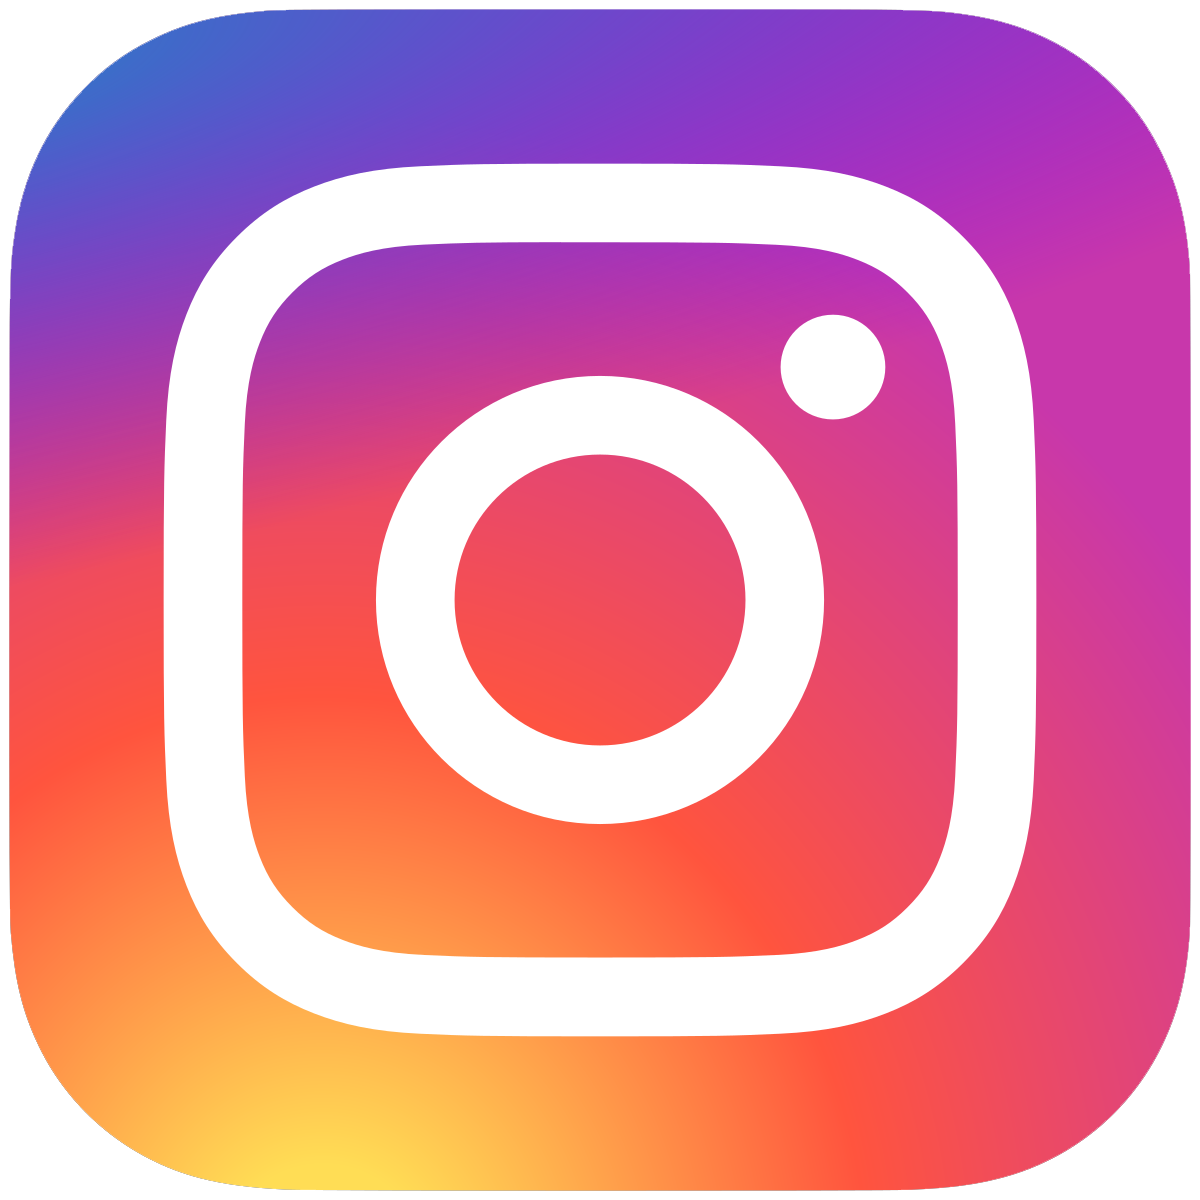 Instagramm-Logo mit Verlinkung zu El Tucano auf Instagramm